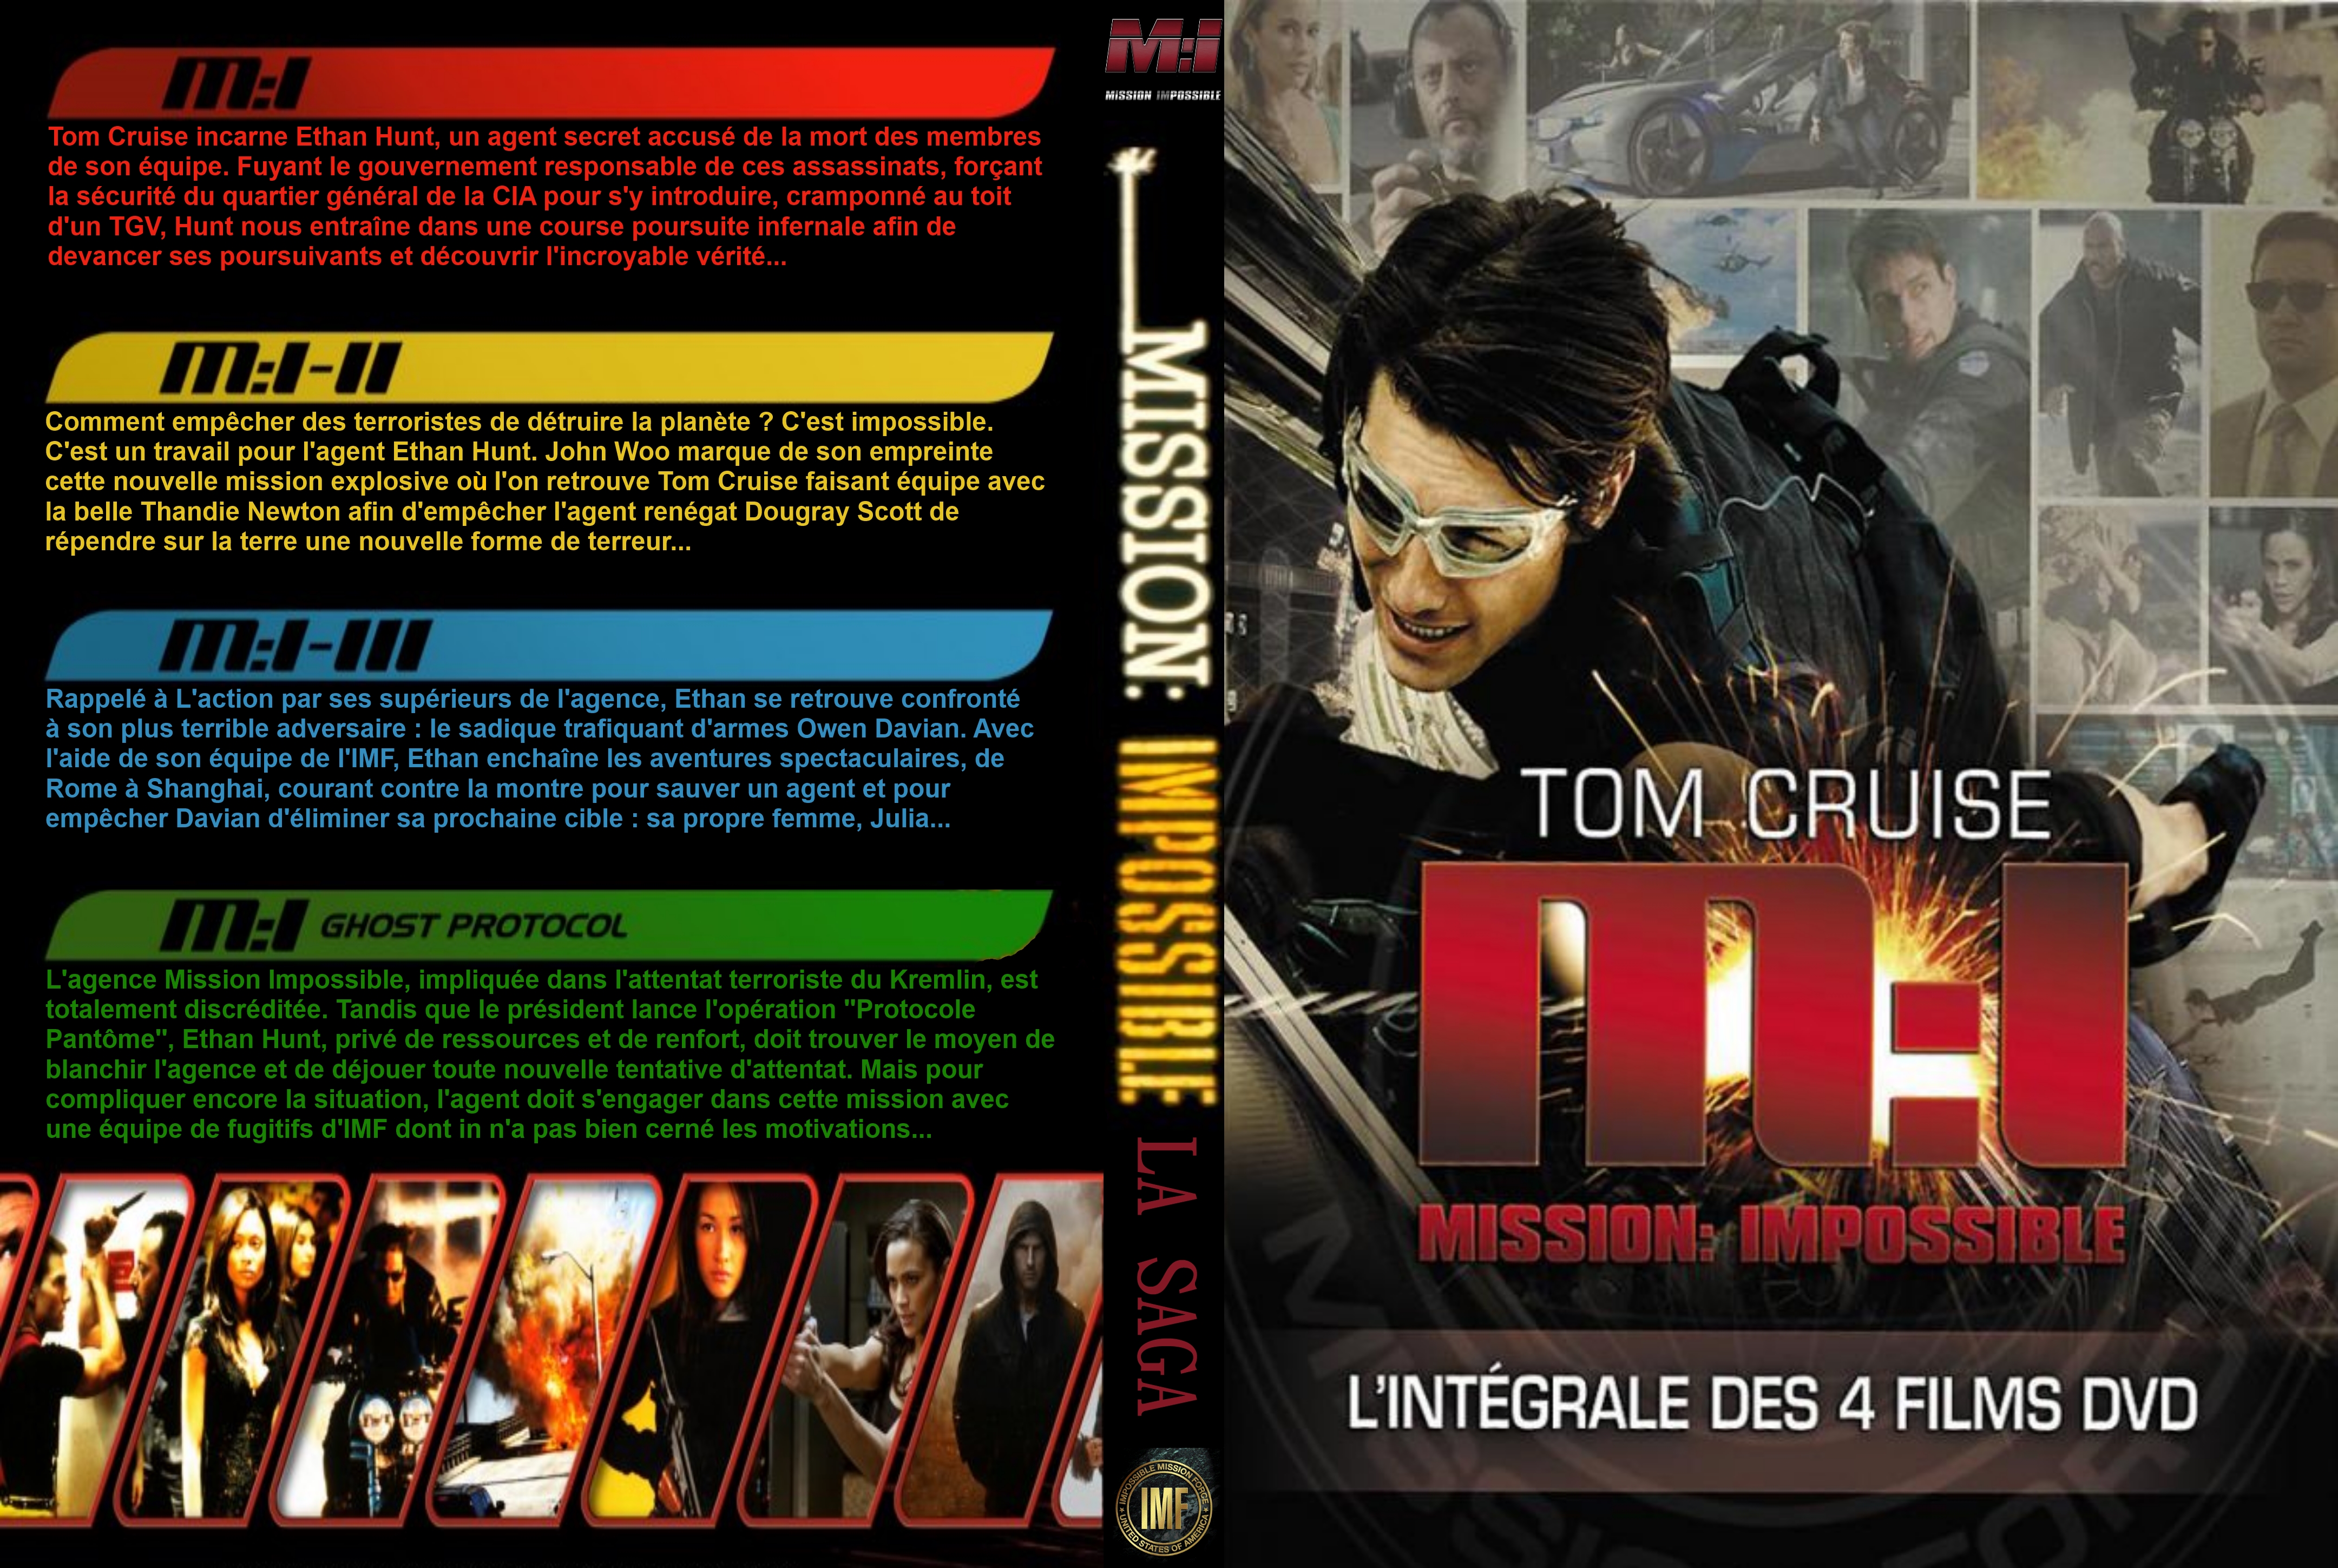 Jaquette DVD Mission Impossible Quadrilogie custom